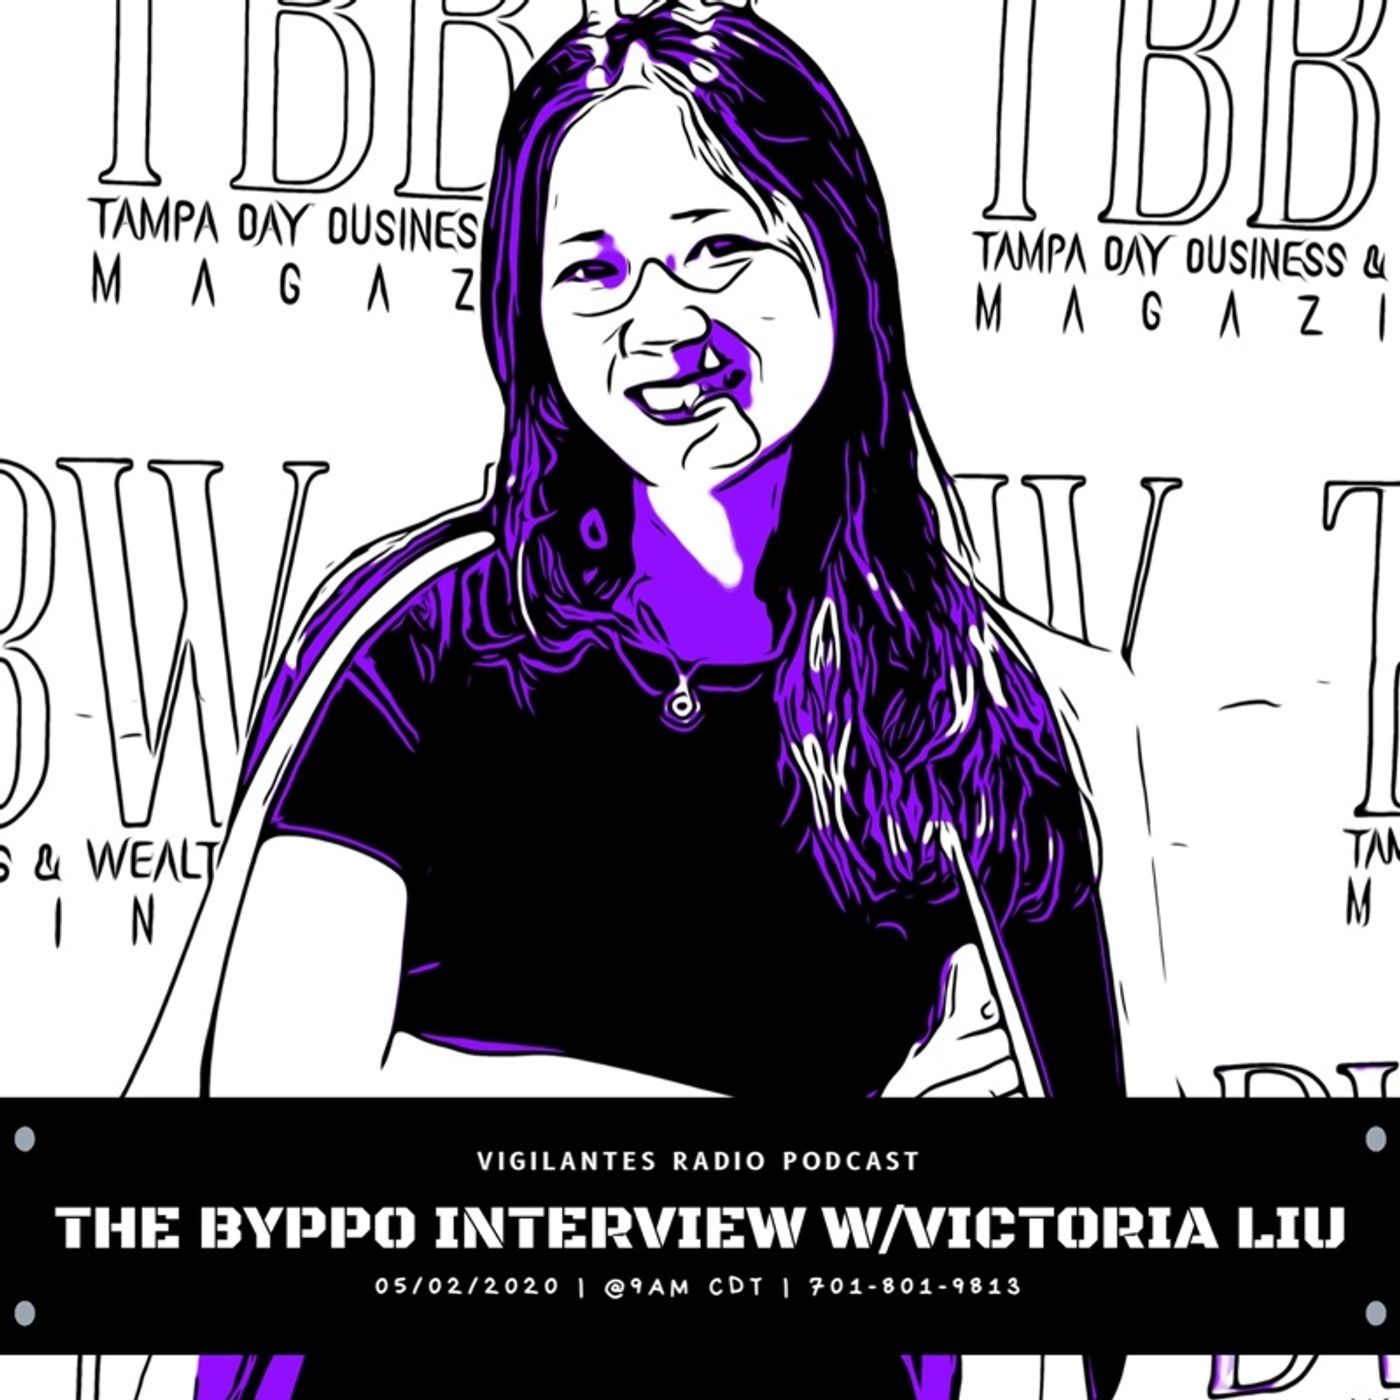 The Byppo Interview w/Victoria Liu. Image